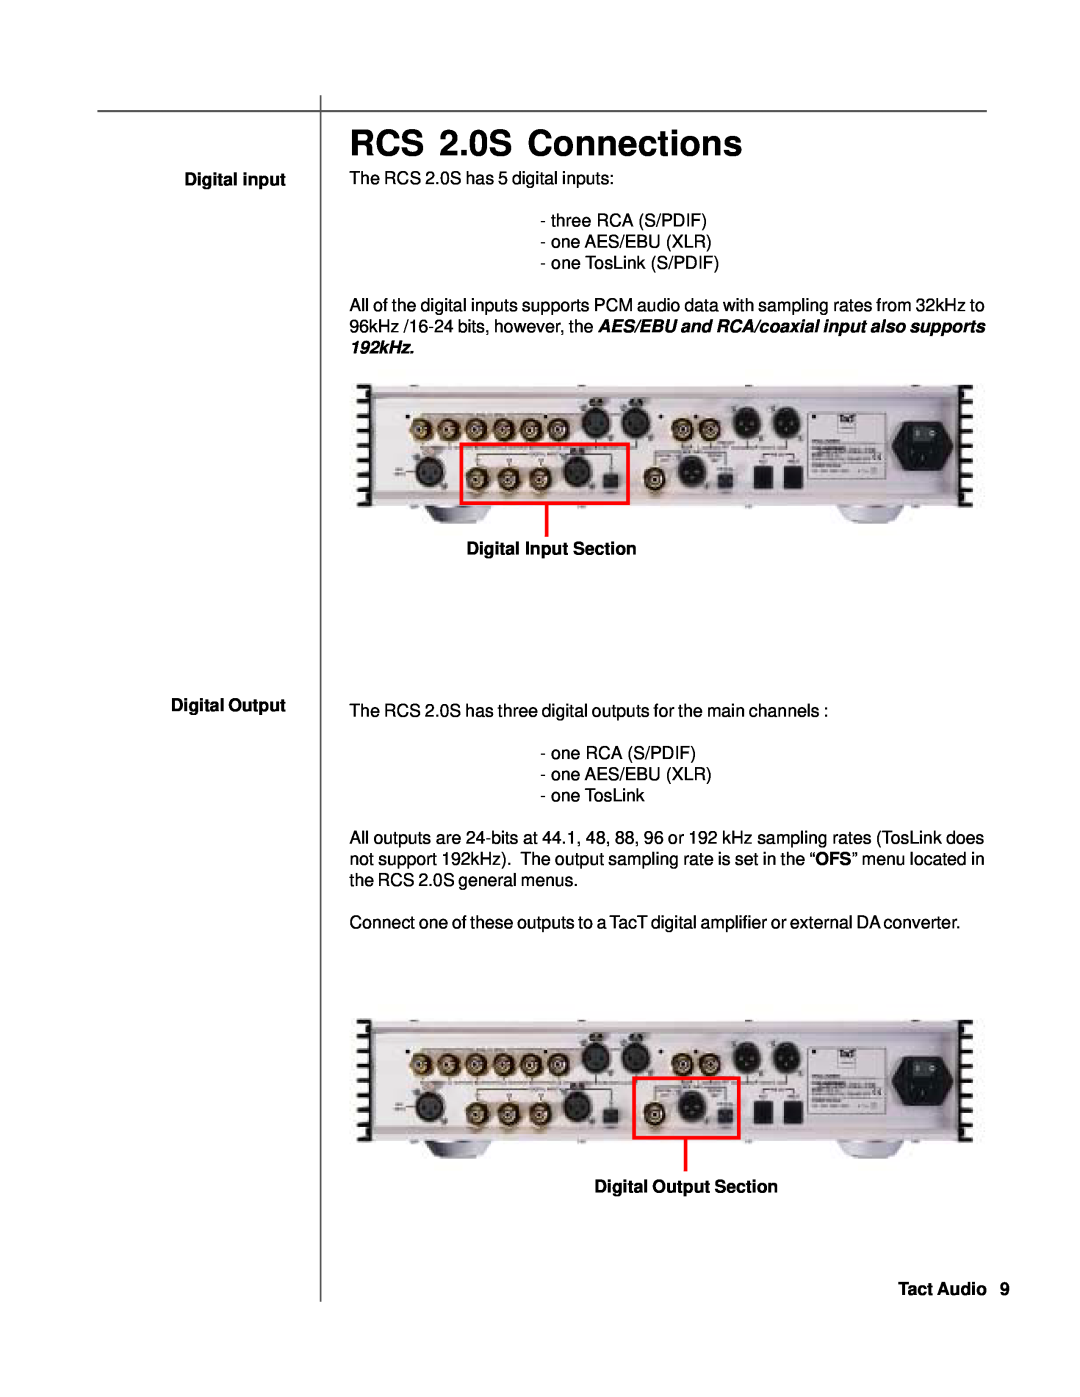 TacT Audio RCS 2.0S Connections, Digital input Digital Output, Digital Input Section, Digital Output Section Tact Audio 